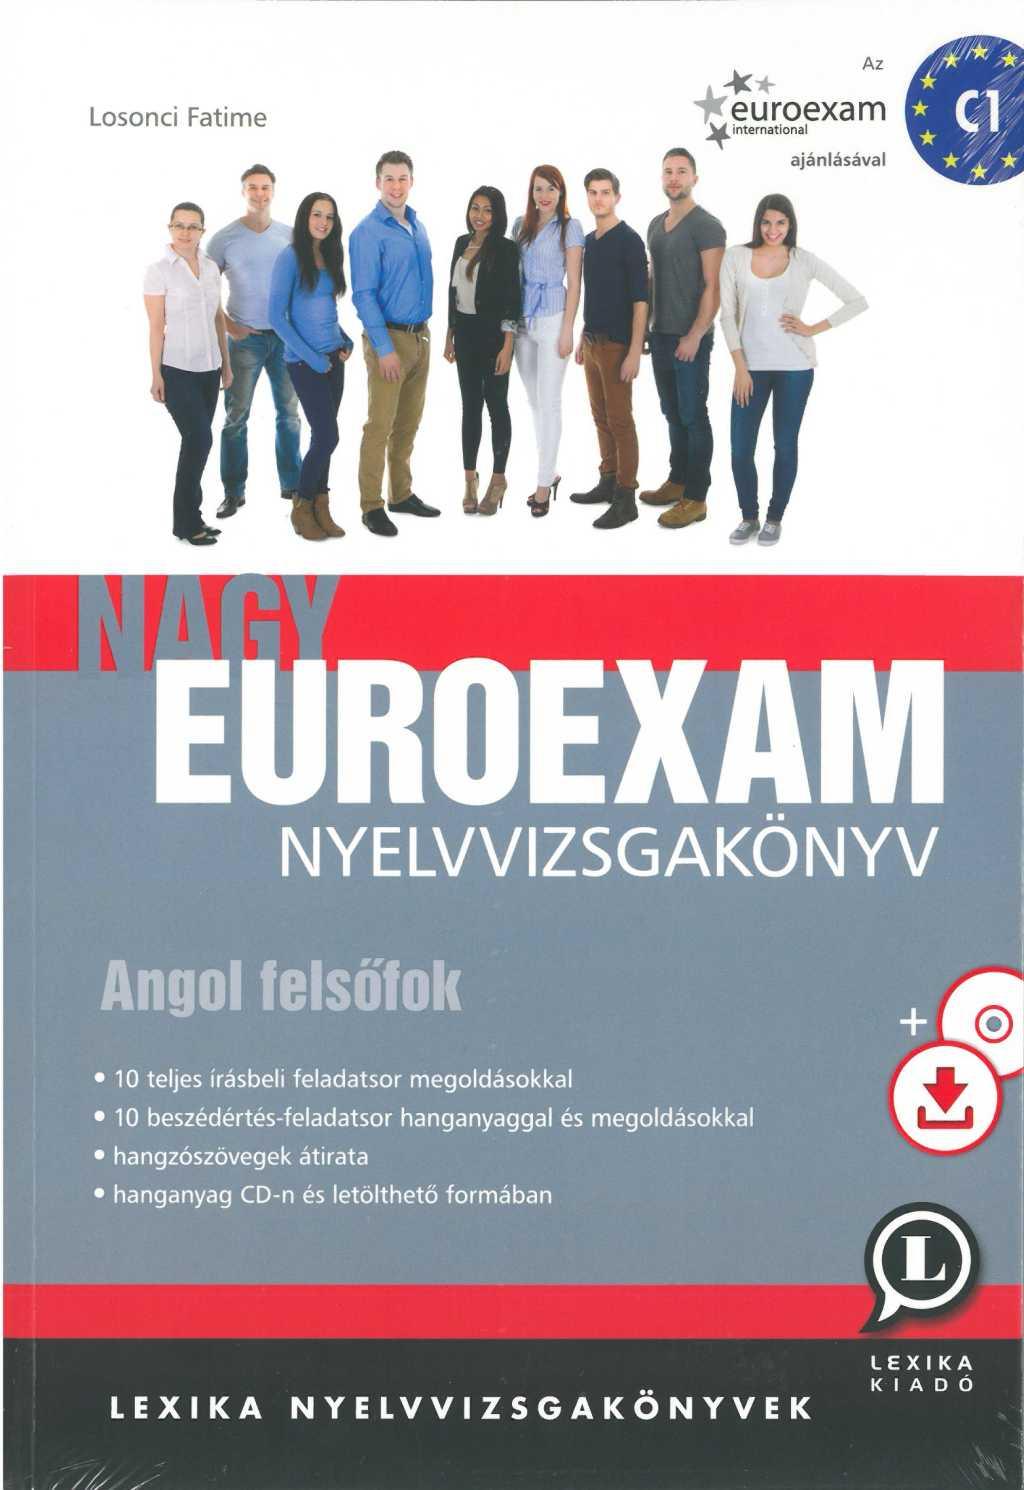 Losonci Fatime - Nagy Euroexam nyelvvizsgakönyv - Angol felsőfok